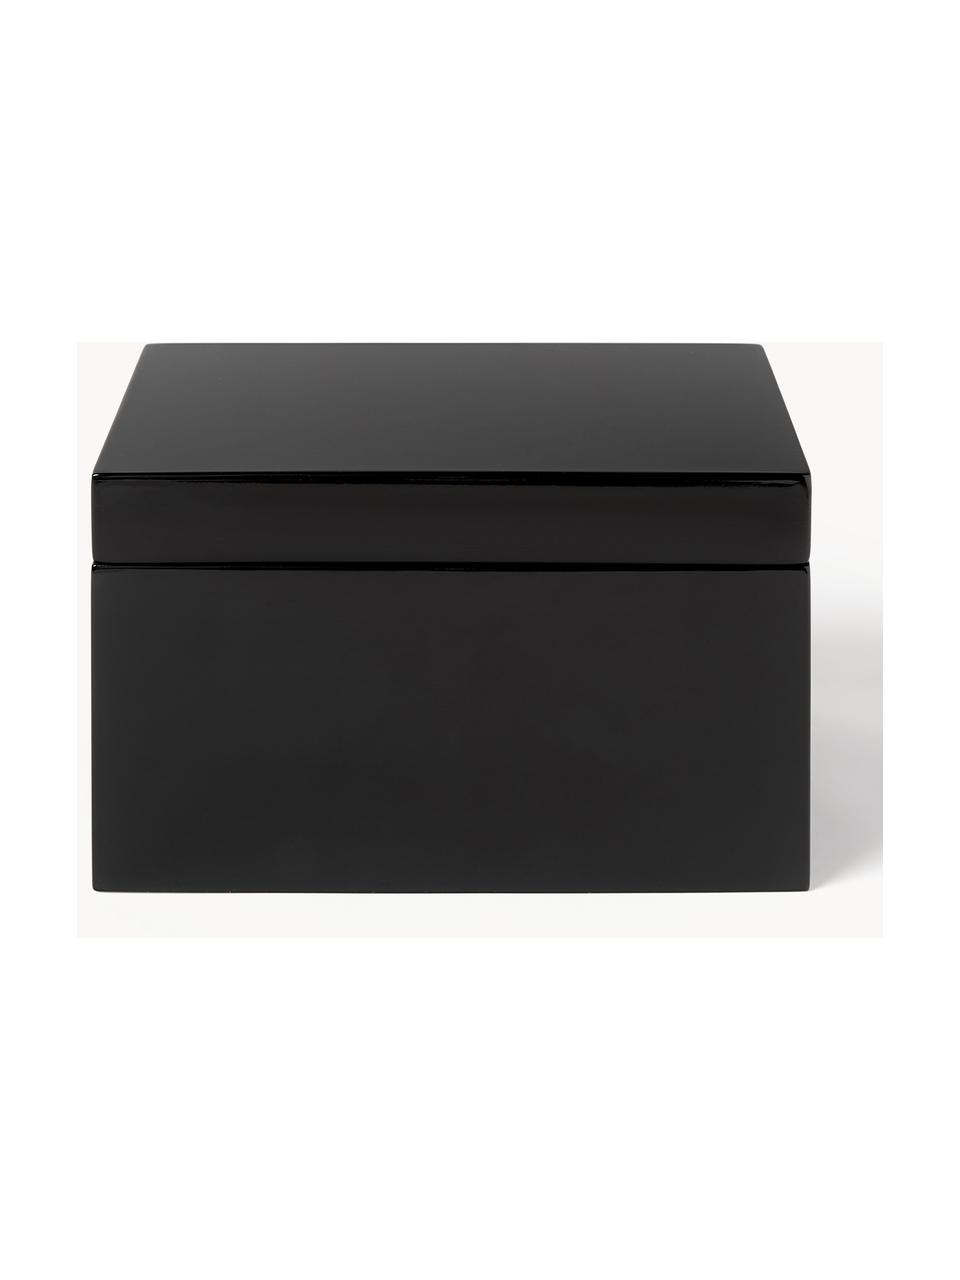 Sada úložných krabic Kylie, 2 díly, MDF deska (dřevovláknitá deska střední hustoty), Černá, tlumeně bílá, Sada s různými velikostmi